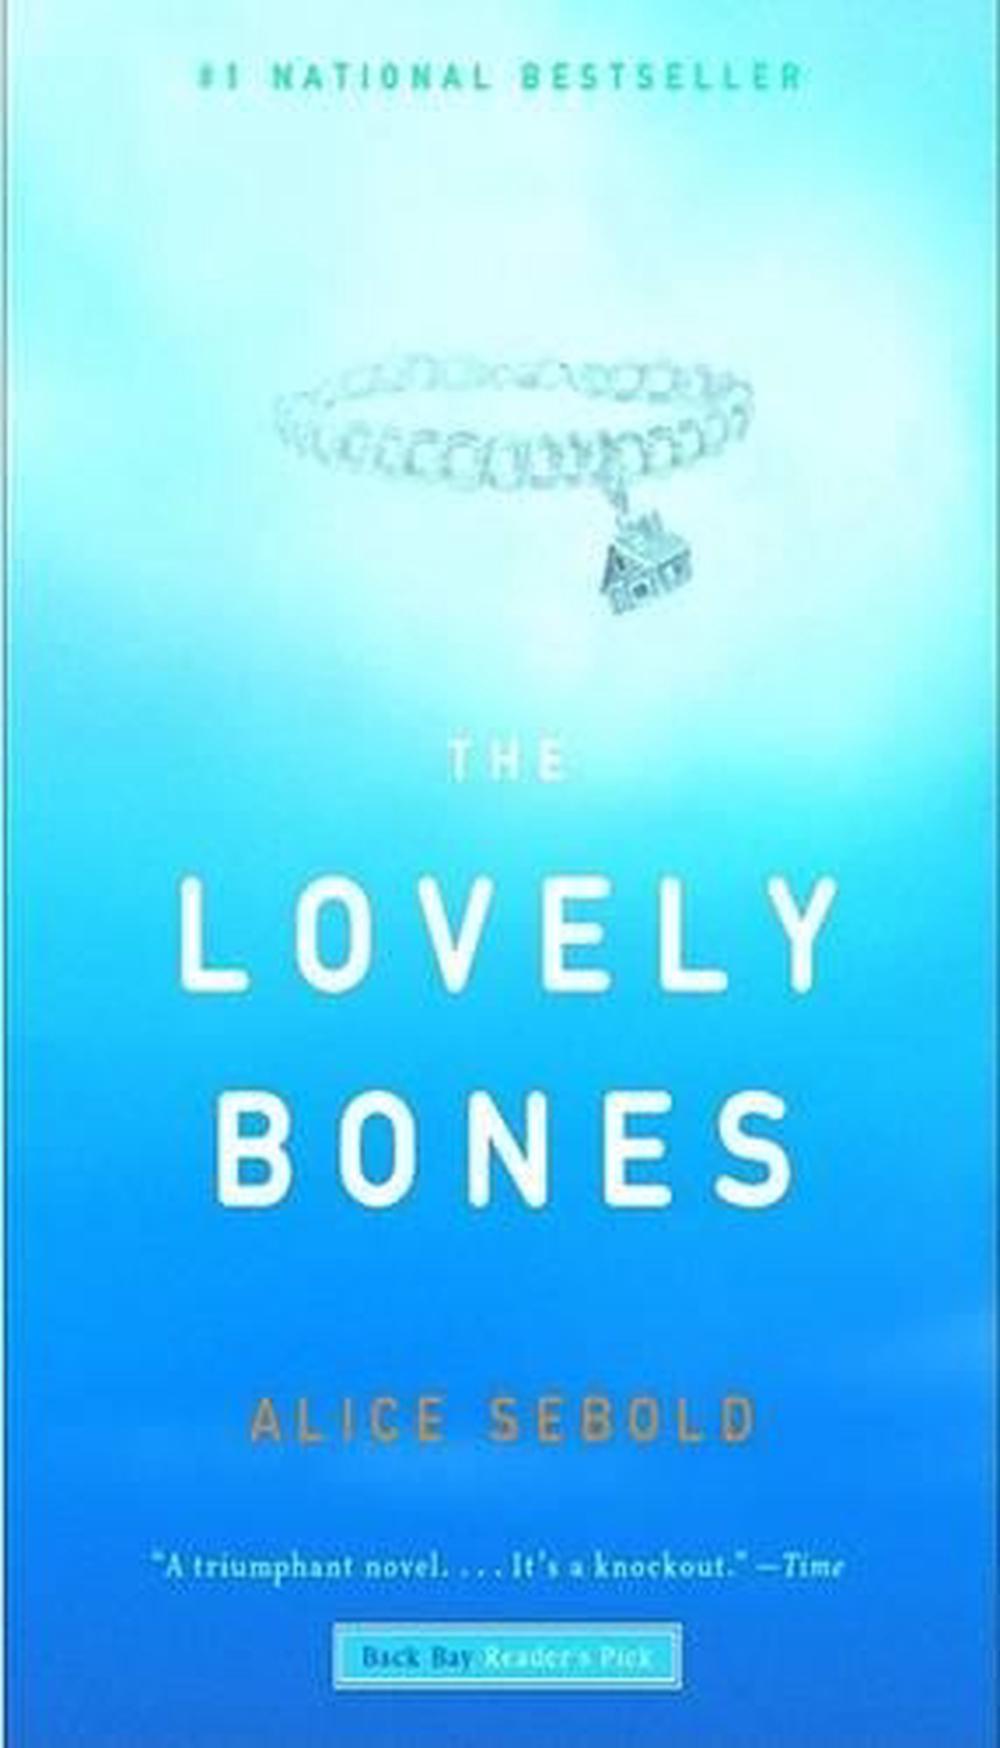 lovely bones author